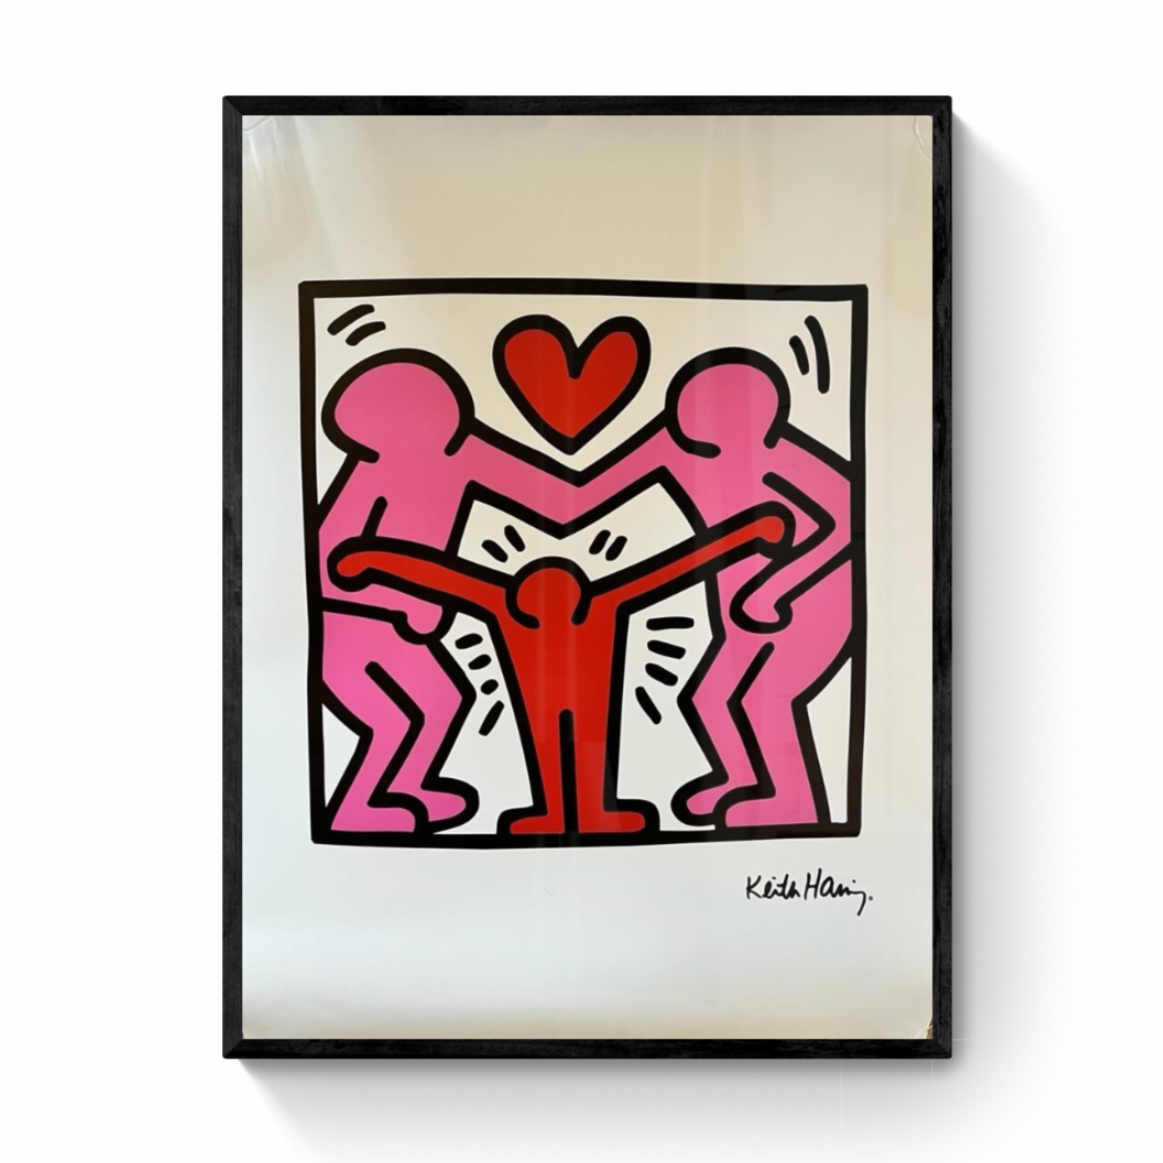 Póster oficial - Keith Haring, Sin título (Familia) - MocoMuseum (Edición estrictamente limitada) - 2019